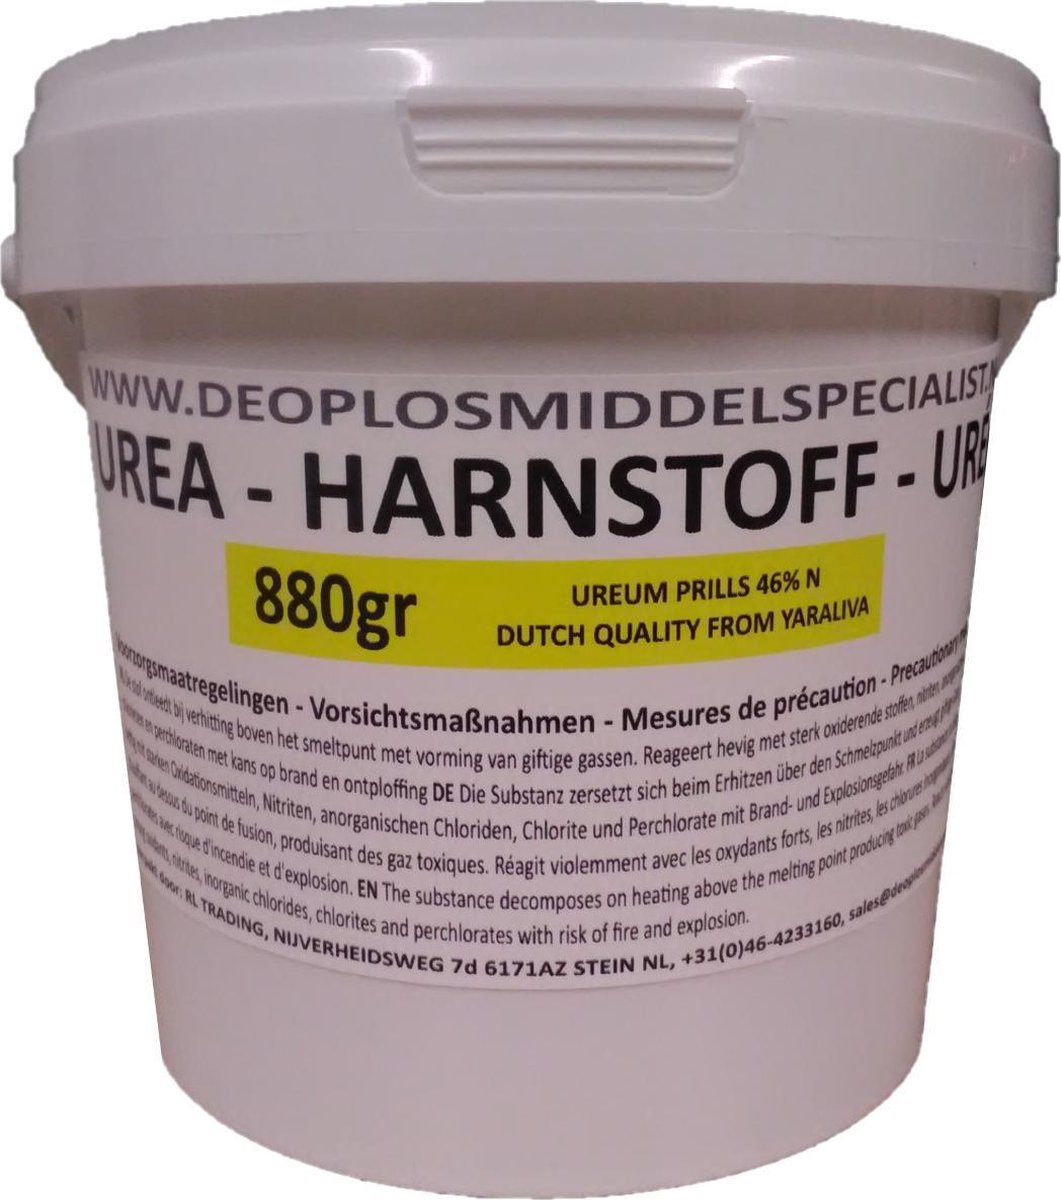 Urea 880gr (Harnstoff, ureum, 46%N)